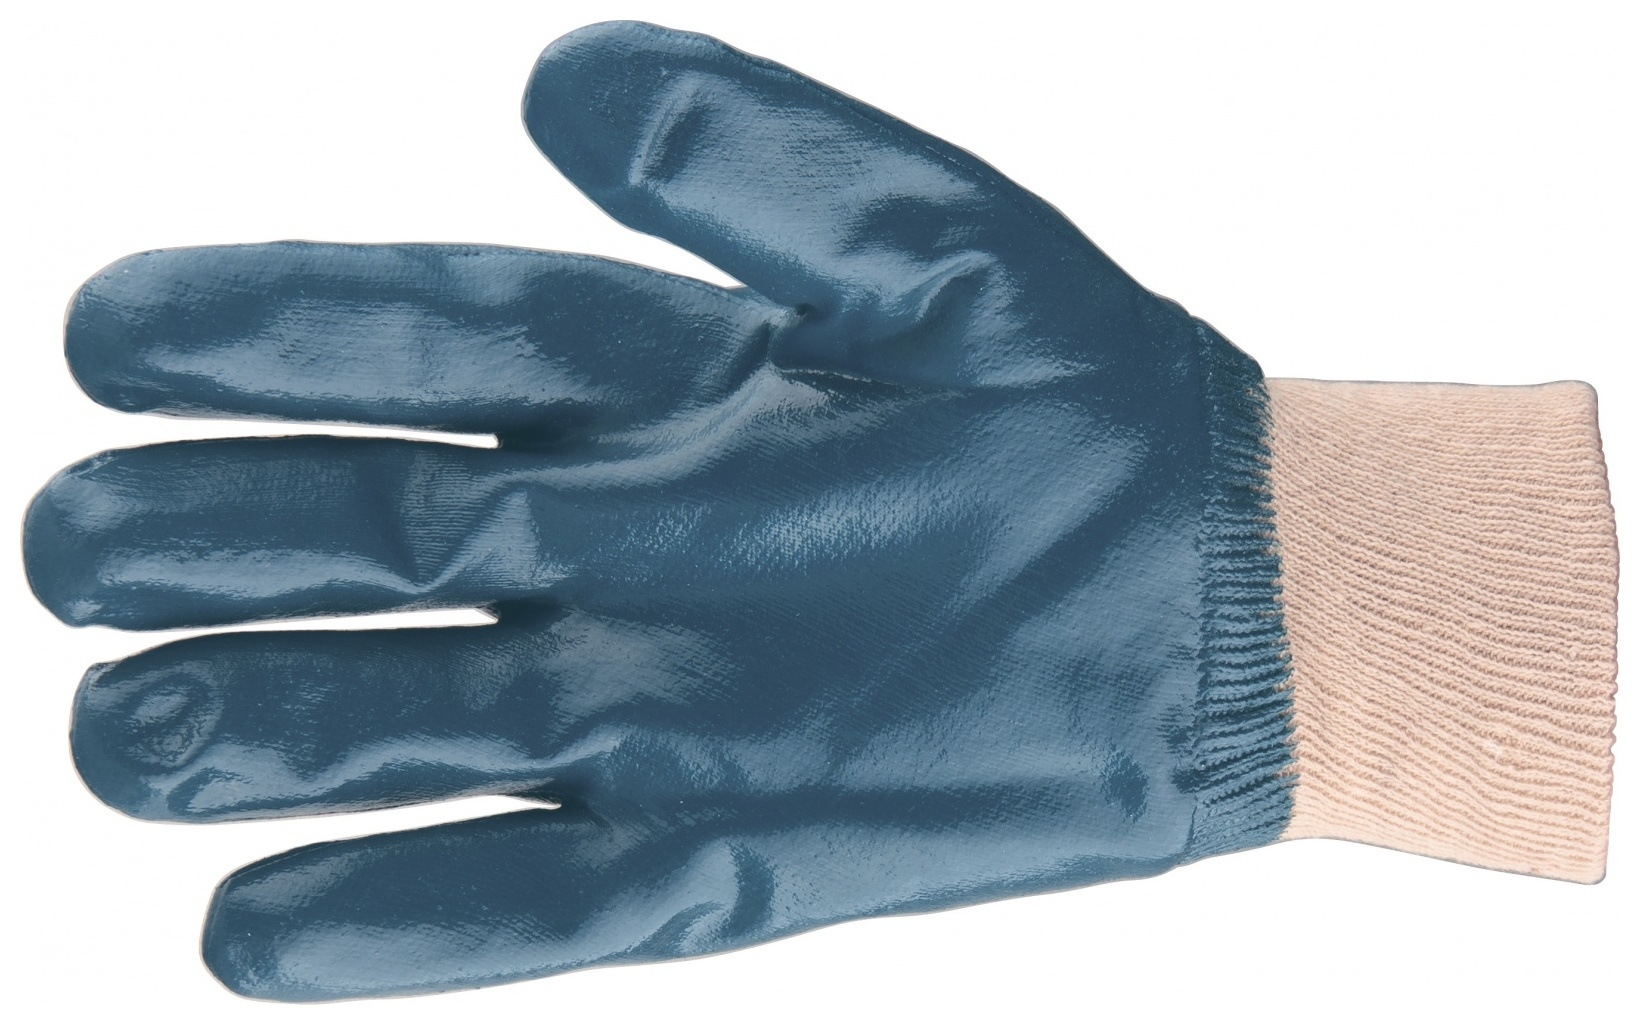 Перчатки трикотажные с обливом из бутадиен-нитрильного каучука, манжет, L